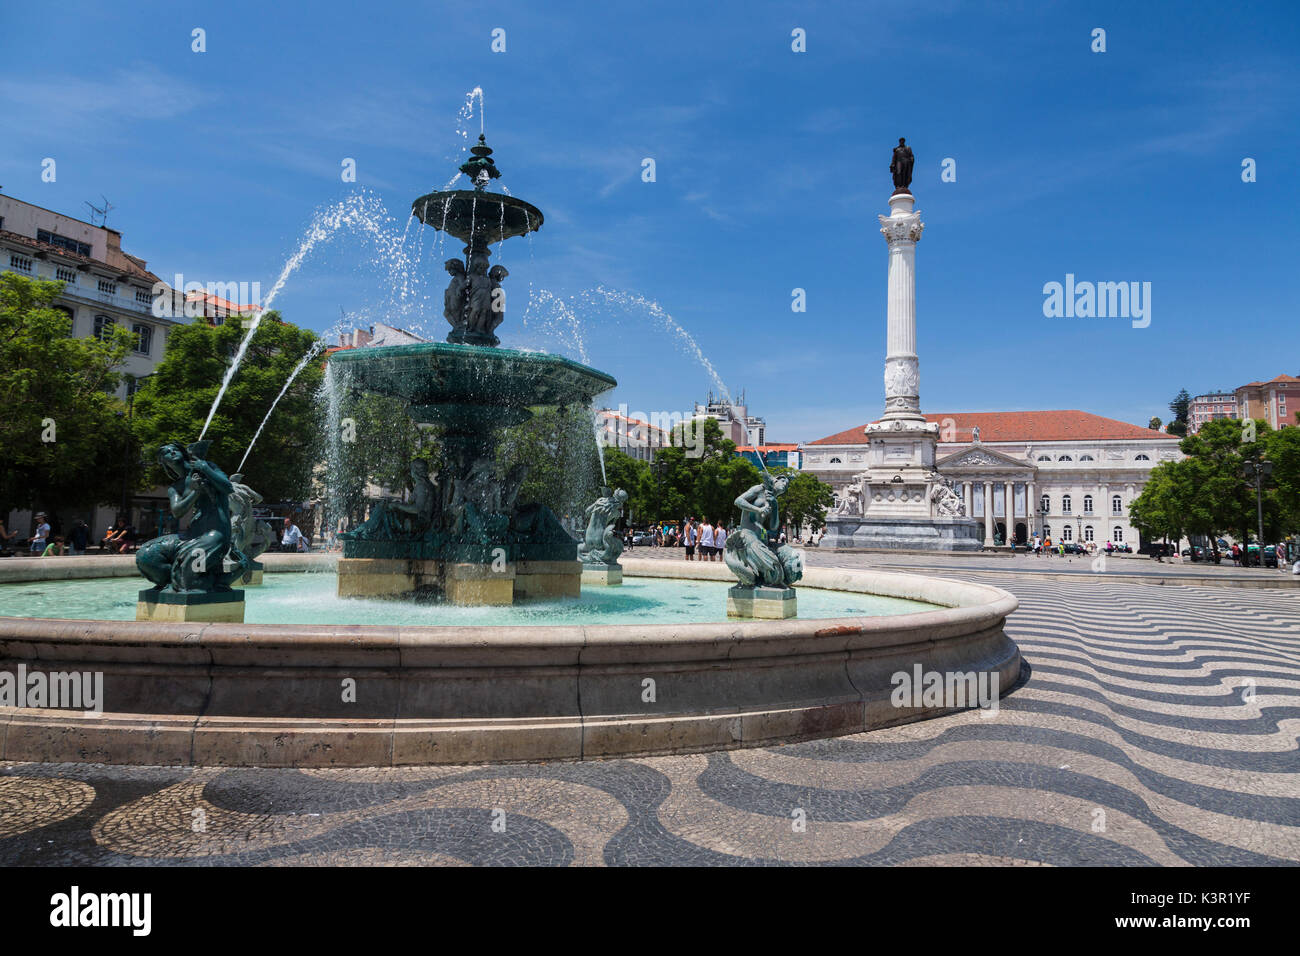 Les trames fontaine le vieux palais de la Praça Dom Pedro IV, également connu sous le nom de la Place Rossio Pombaline Downtown de Lisbonne Portugal Europe Banque D'Images